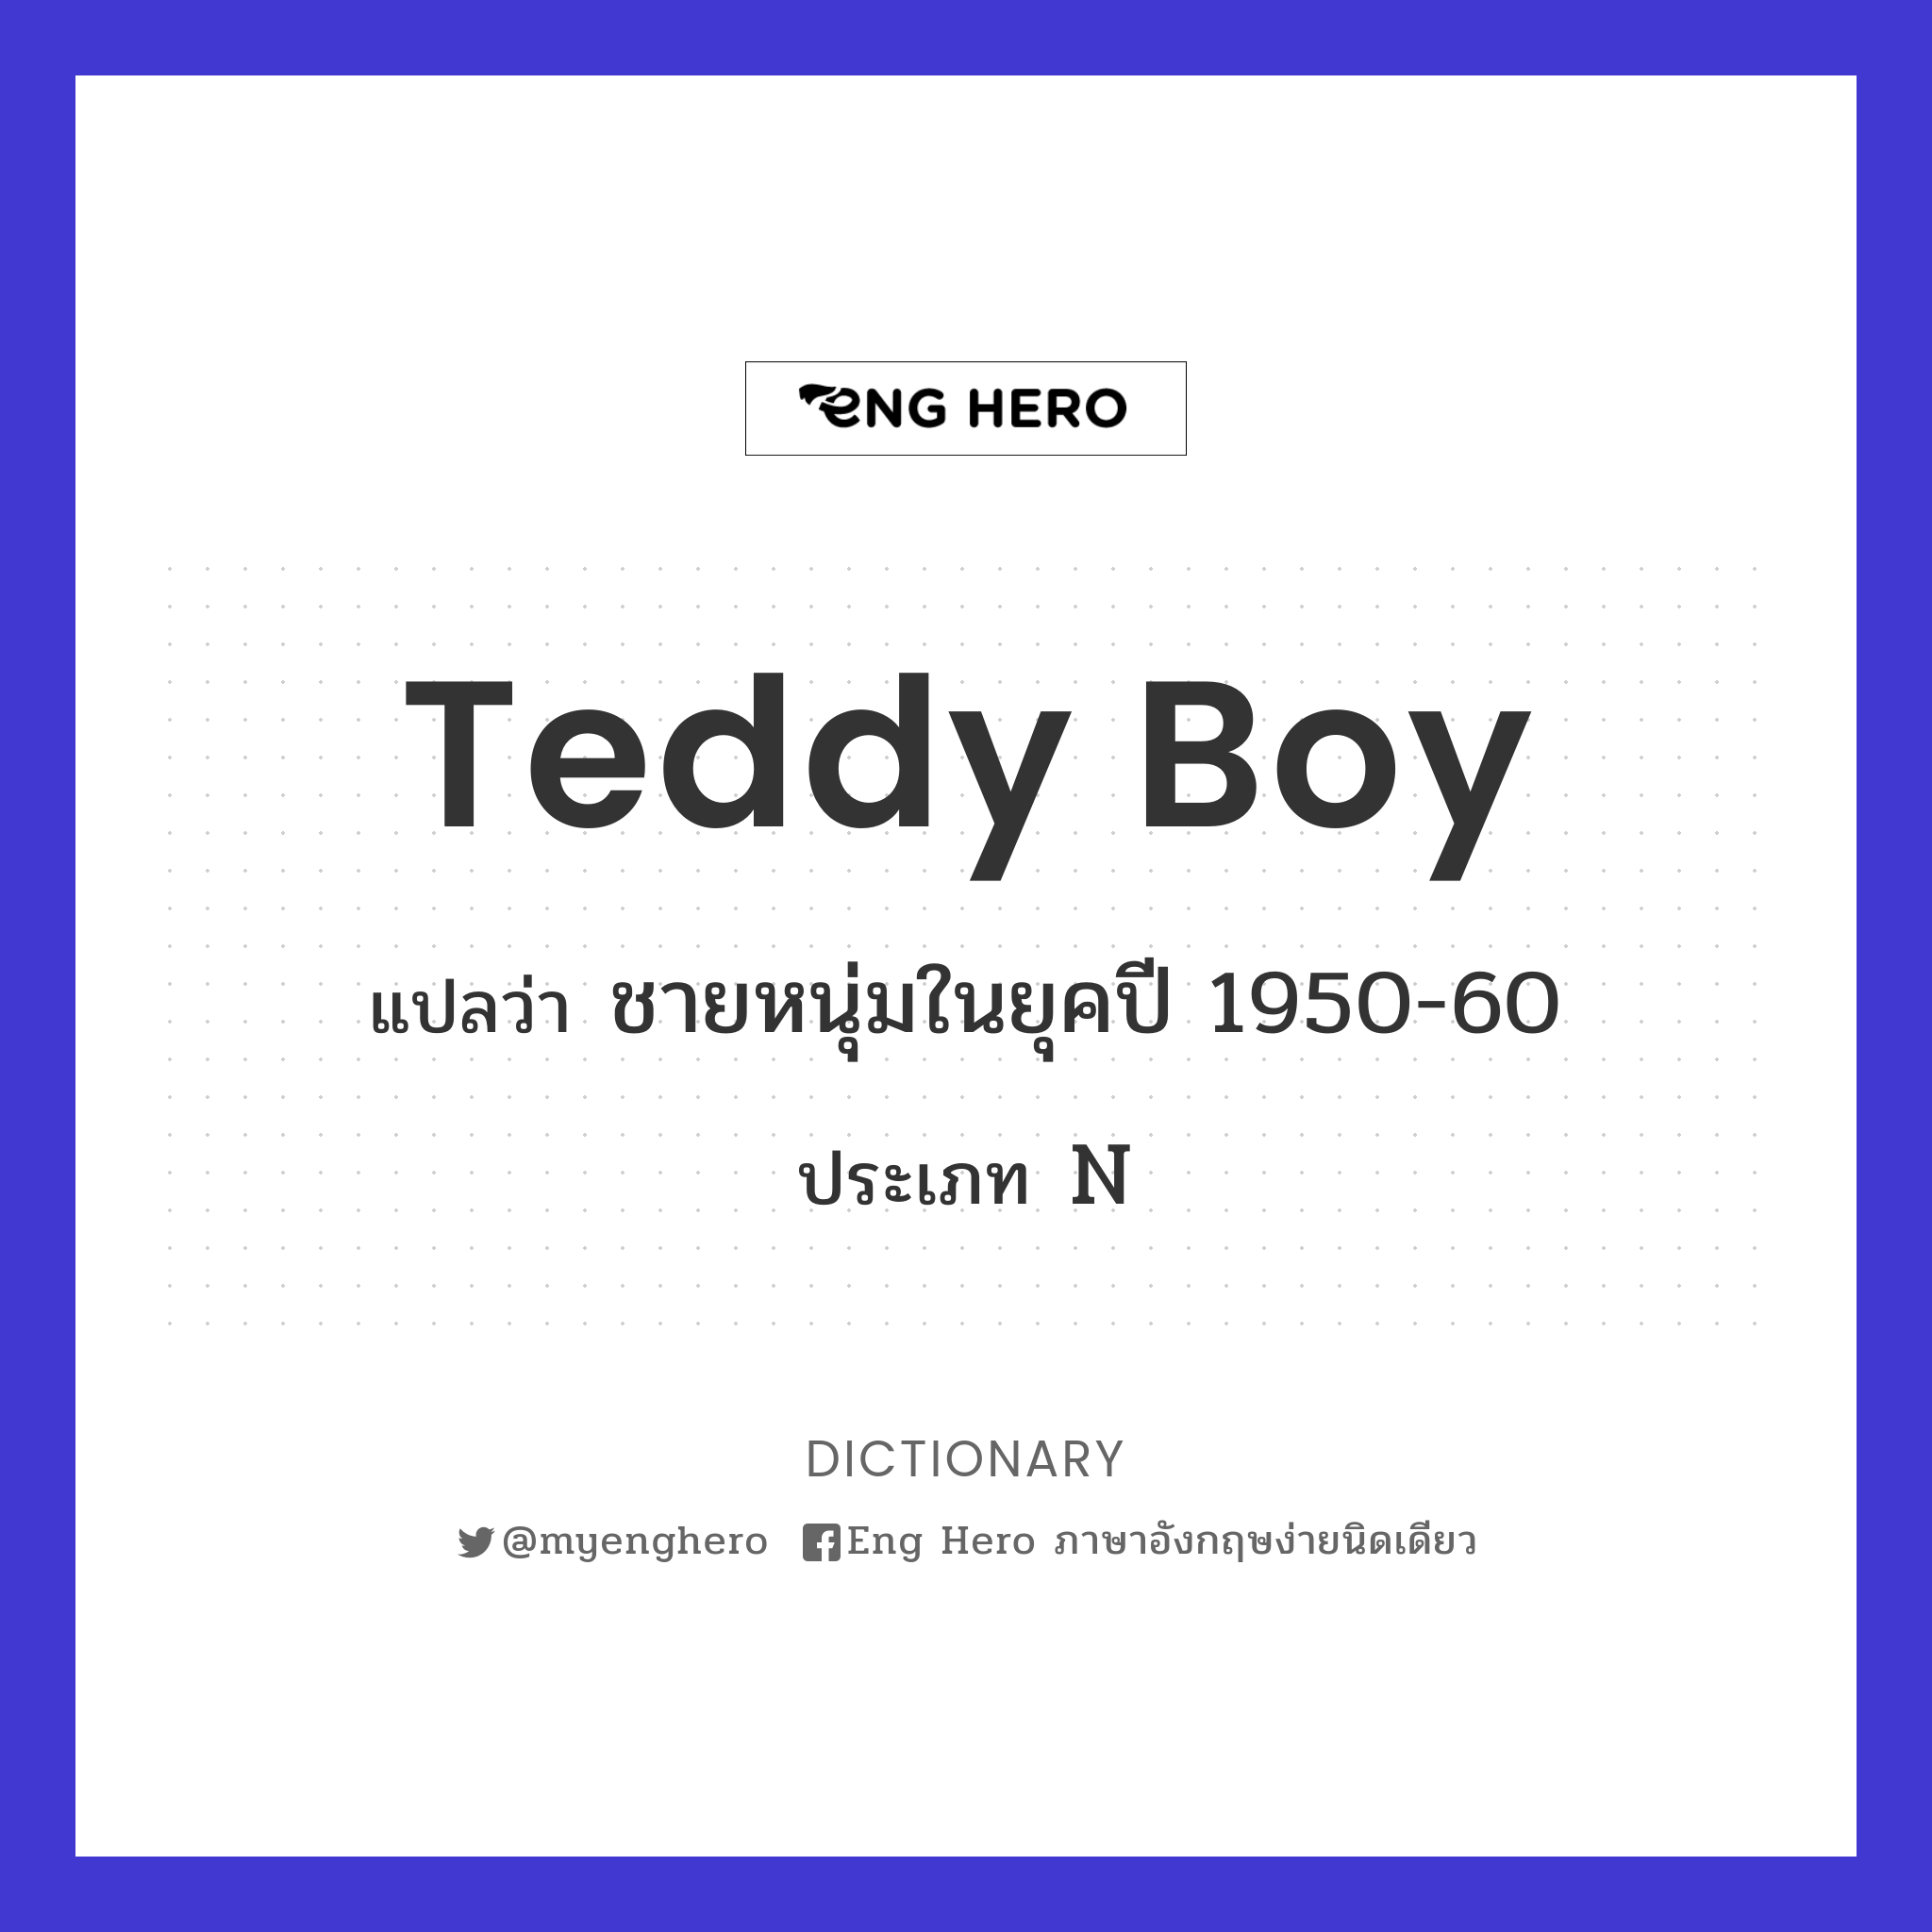 Teddy boy